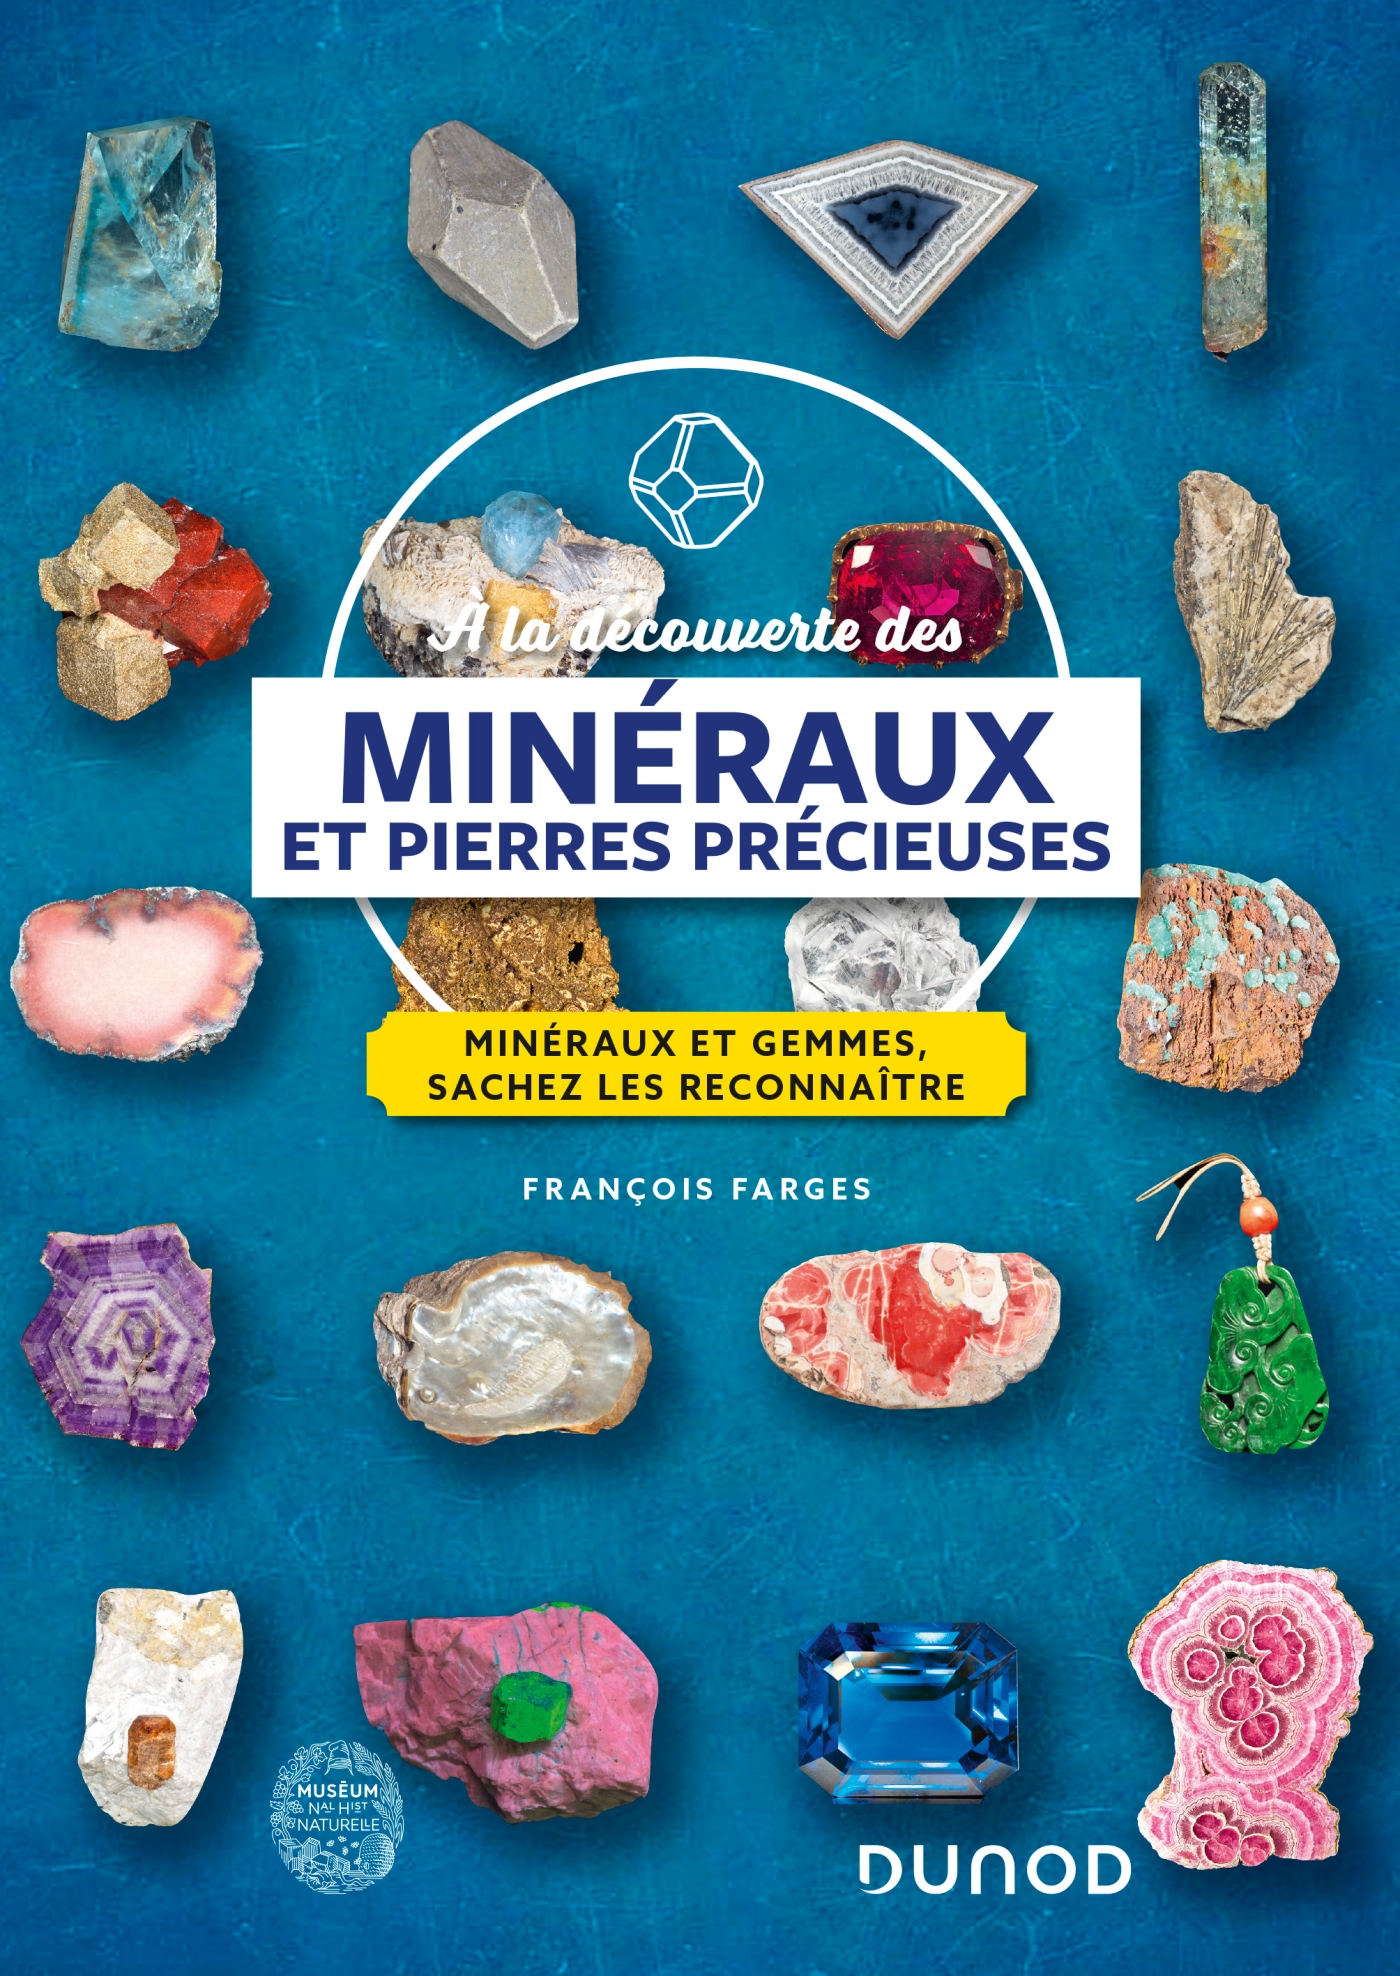 Joyaux et pierres précieuses – éditions Larousse – Paris Frivole